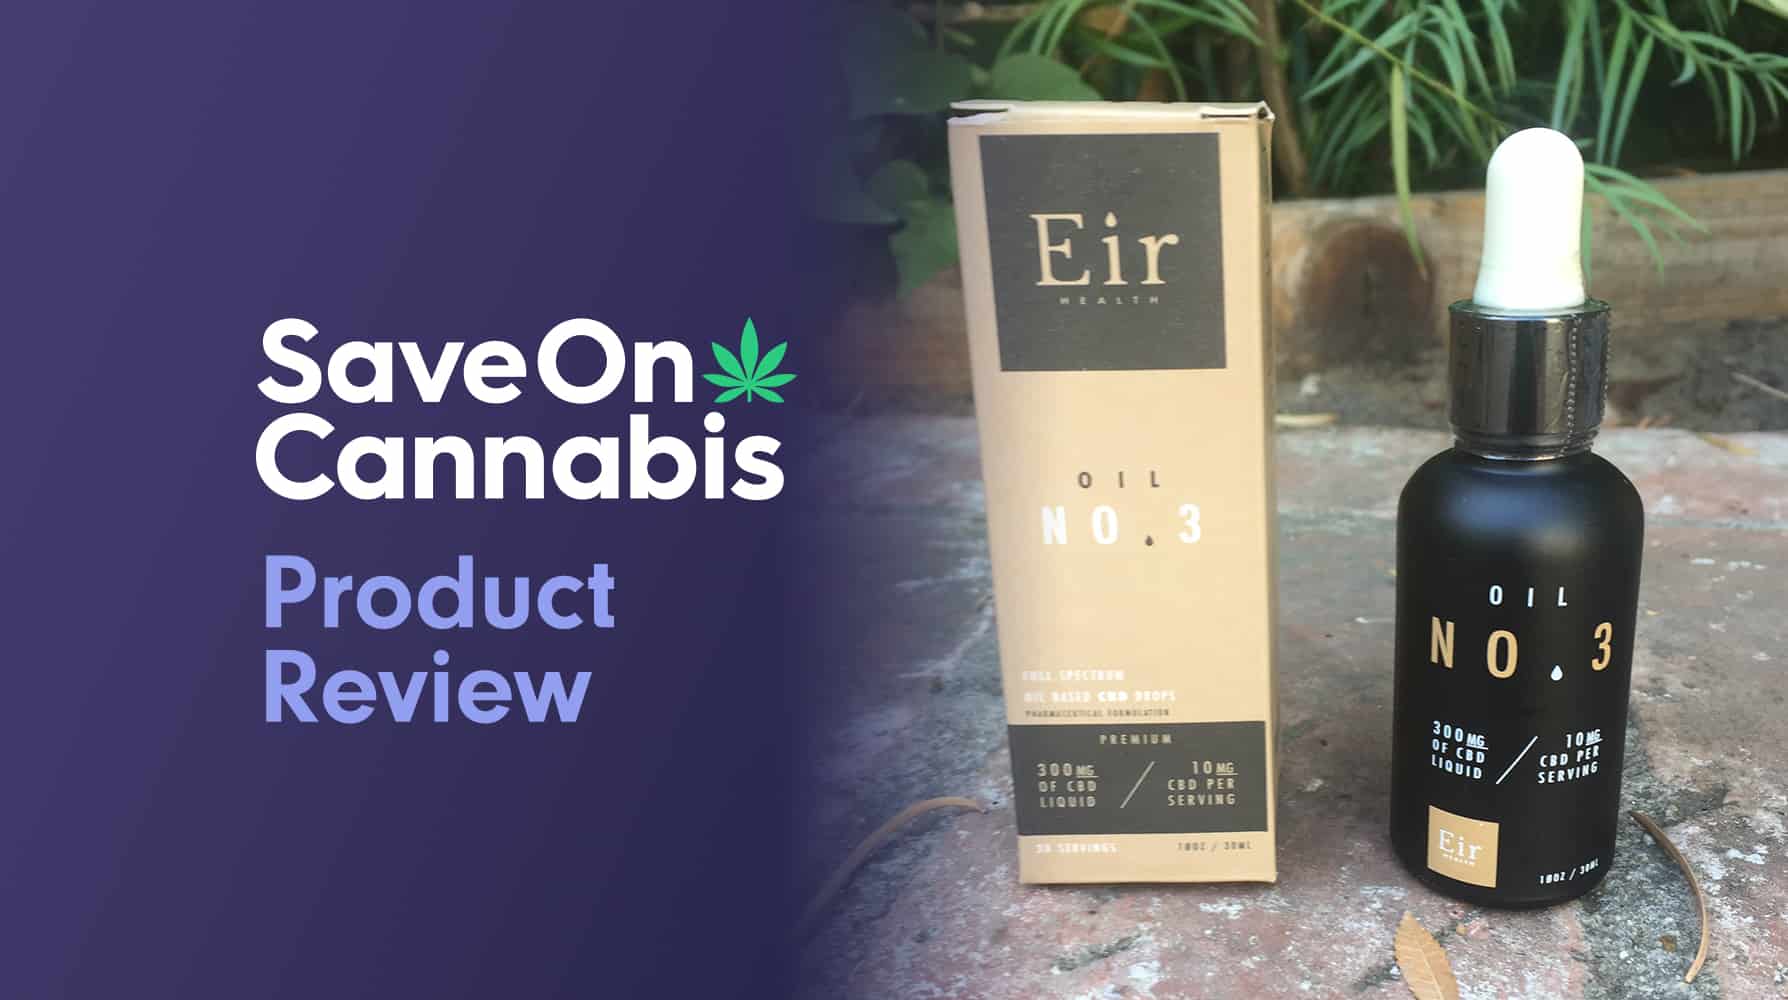 Eir Health CBD Hemp Extract review save on cannabis Website